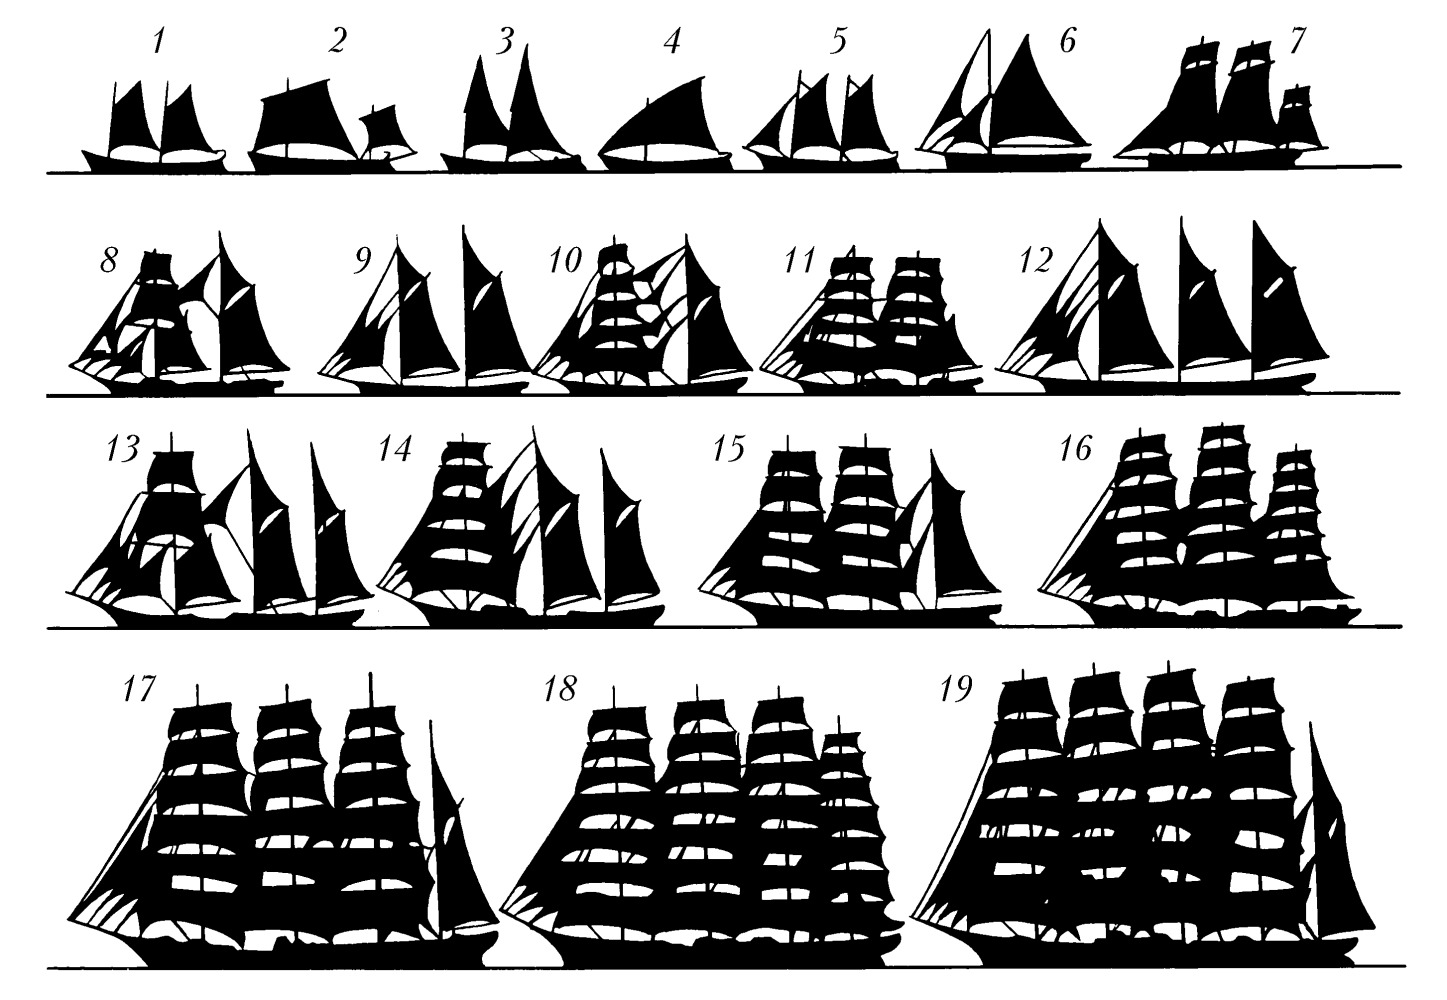 Тип парусного судна. Типы парусных кораблей. Классификация морских парусных судов. Типы кораблей 18 века. Типы парусных кораблей 18 века.